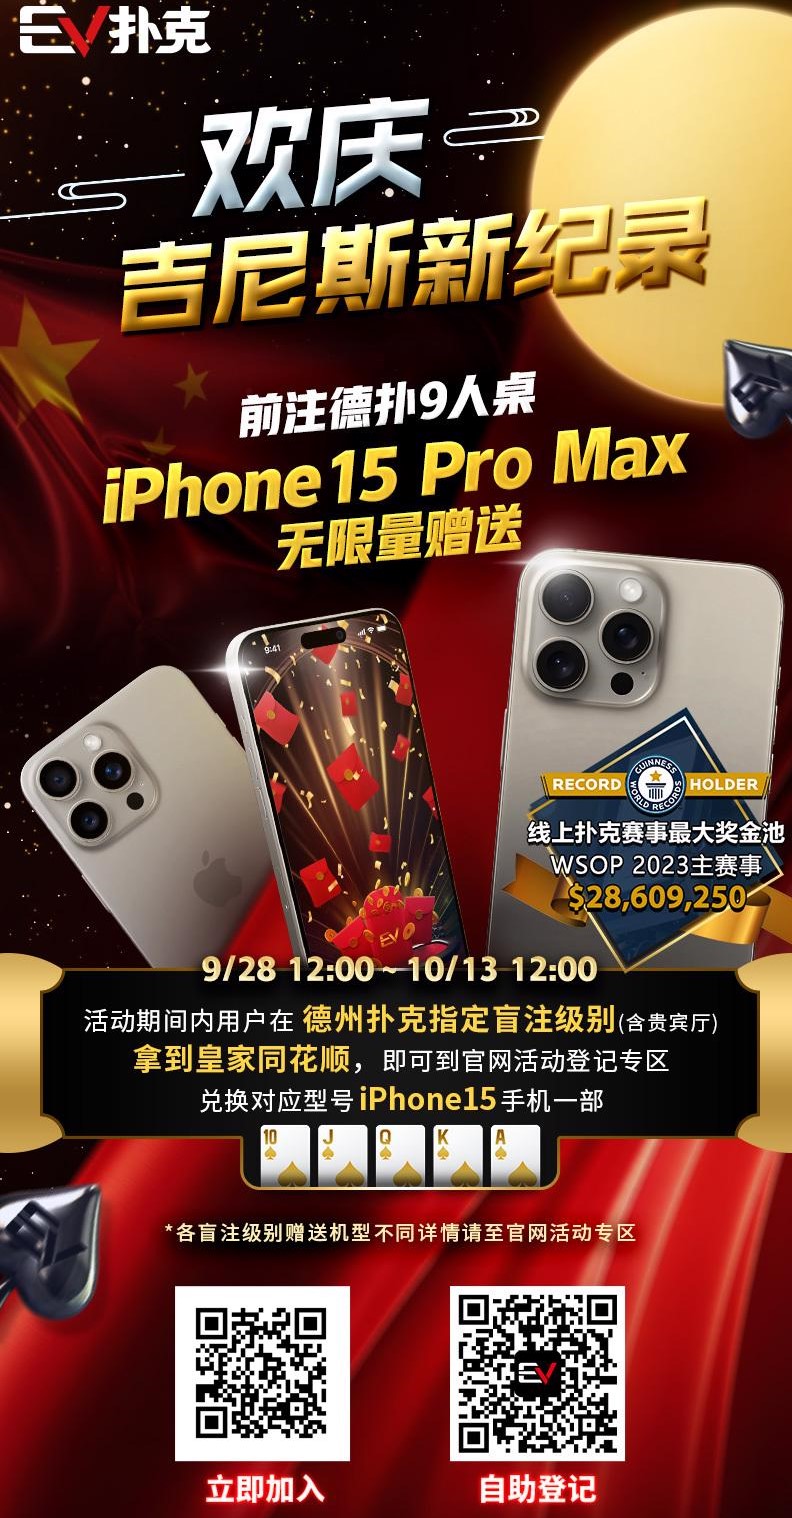 限时活动：欢庆吉尼斯新纪录 德扑现金桌 iPhone 15 Pro Max 无限量赠送!